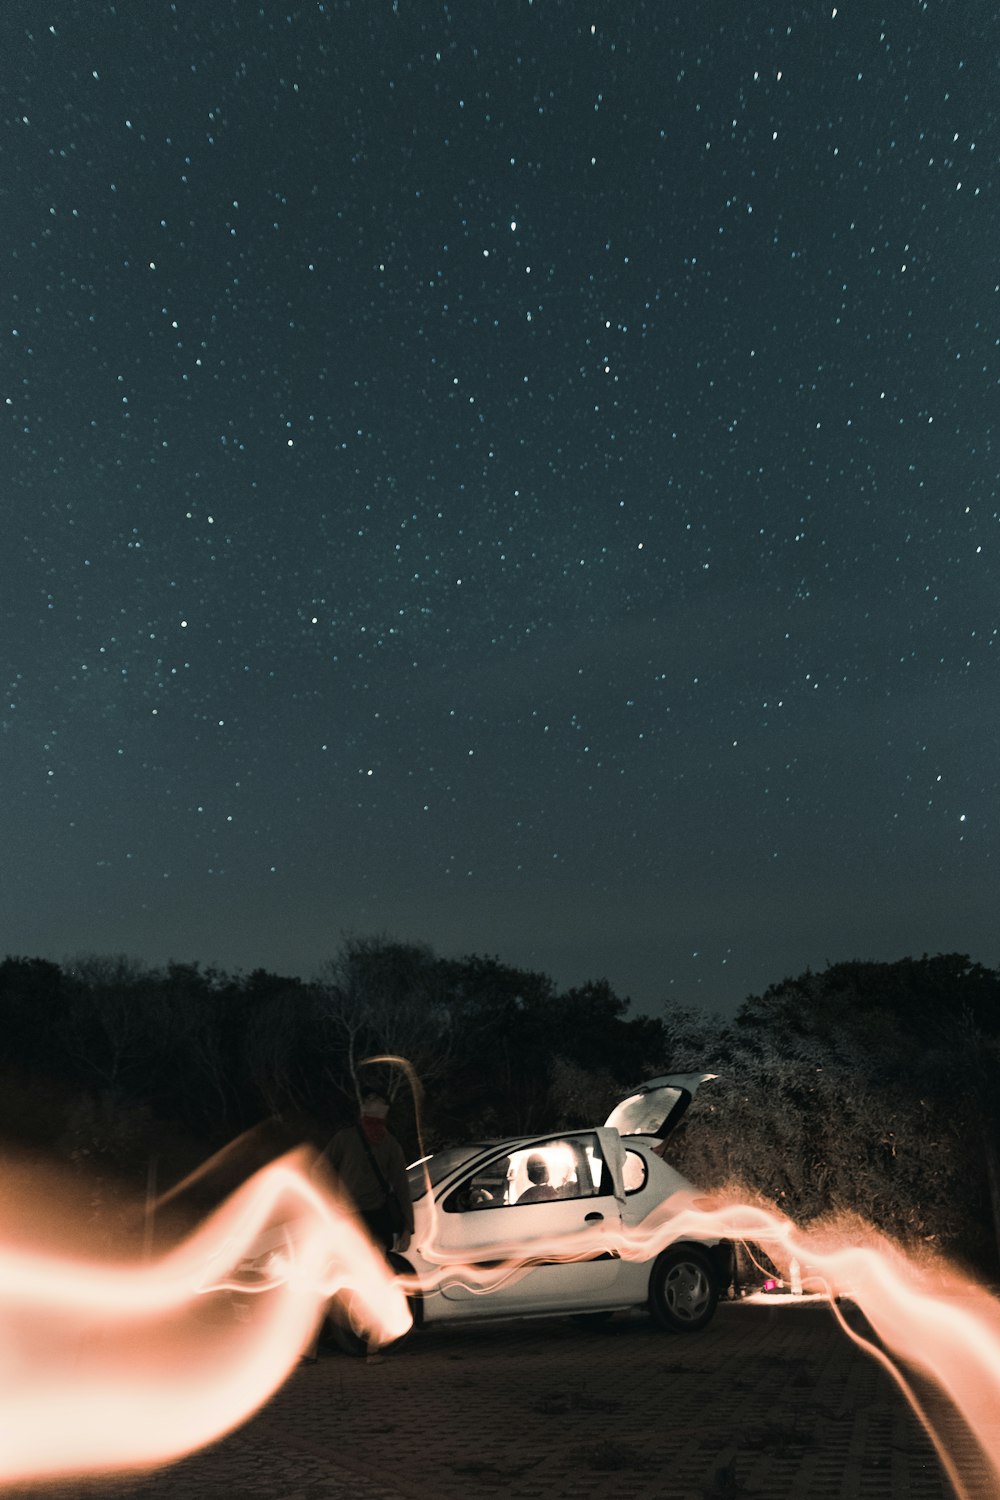 Una persona che tiene una macchina in aria con un cielo stellato sopra foto  – Algarve Immagine gratuita su Unsplash